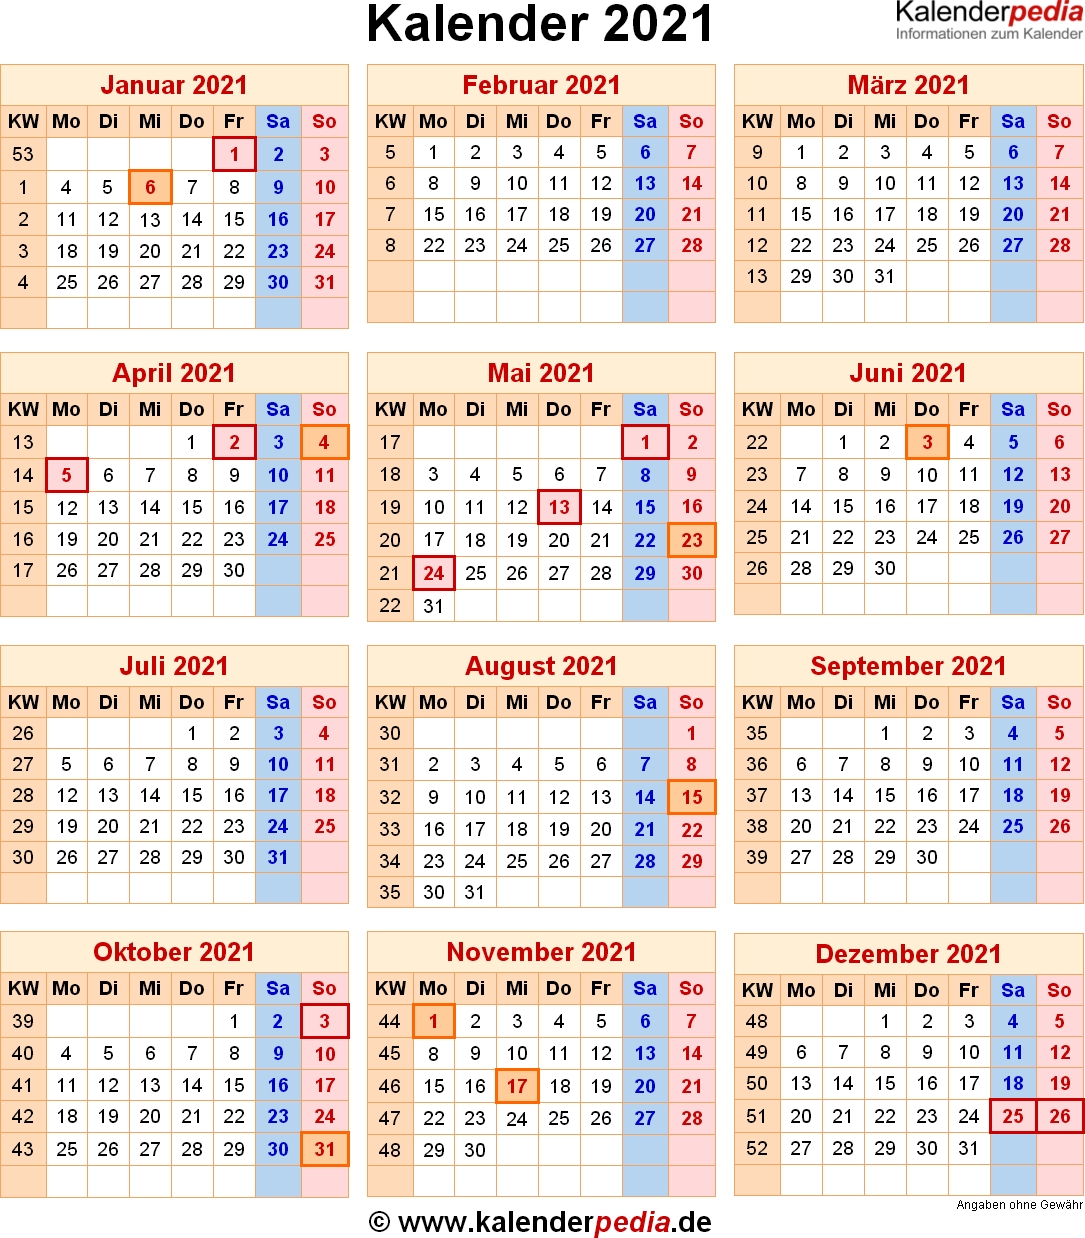 Get Kalender 2021 Deutsch